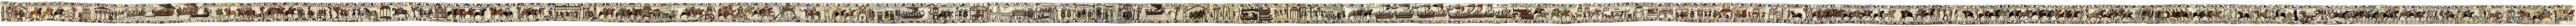 Theoretici discussiëren over de vraag of het Tapijt van Bayeux een voorloper is van het stripverhaal.  